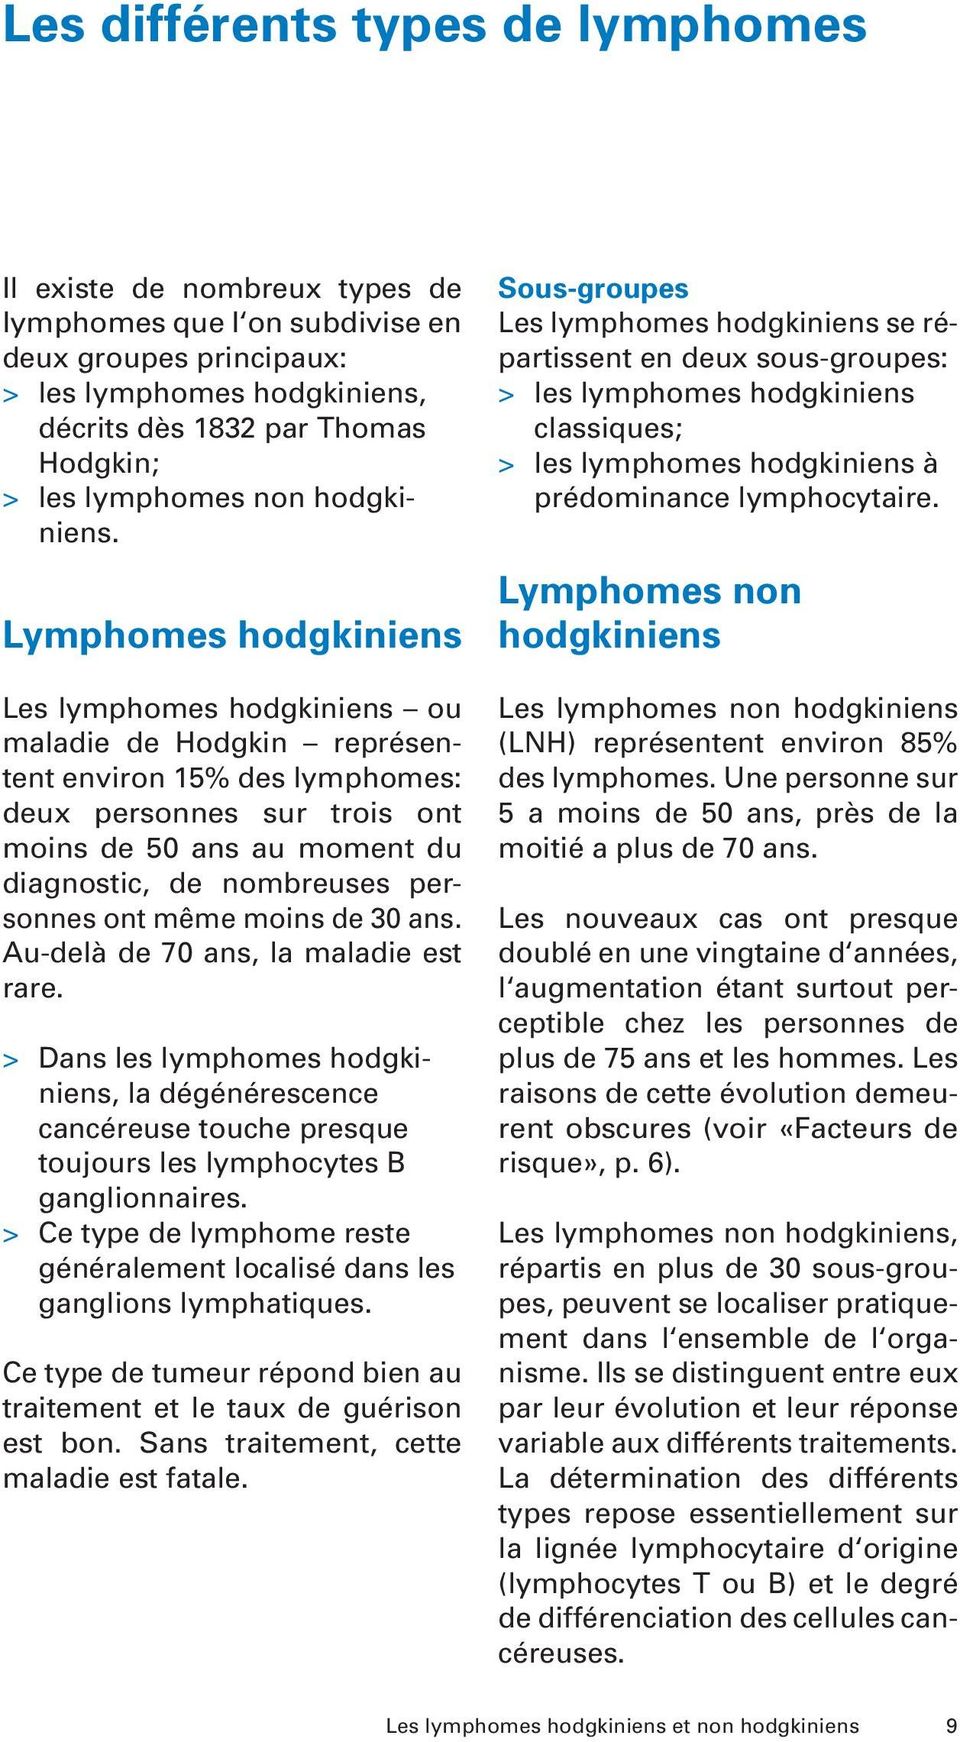 Lymphomes hodgkiniens Les lymphomes hodgkiniens ou maladie de Hodgkin représentent environ 15% des lymphomes: deux personnes sur trois ont moins de 50 ans au moment du diagnostic, de nombreuses